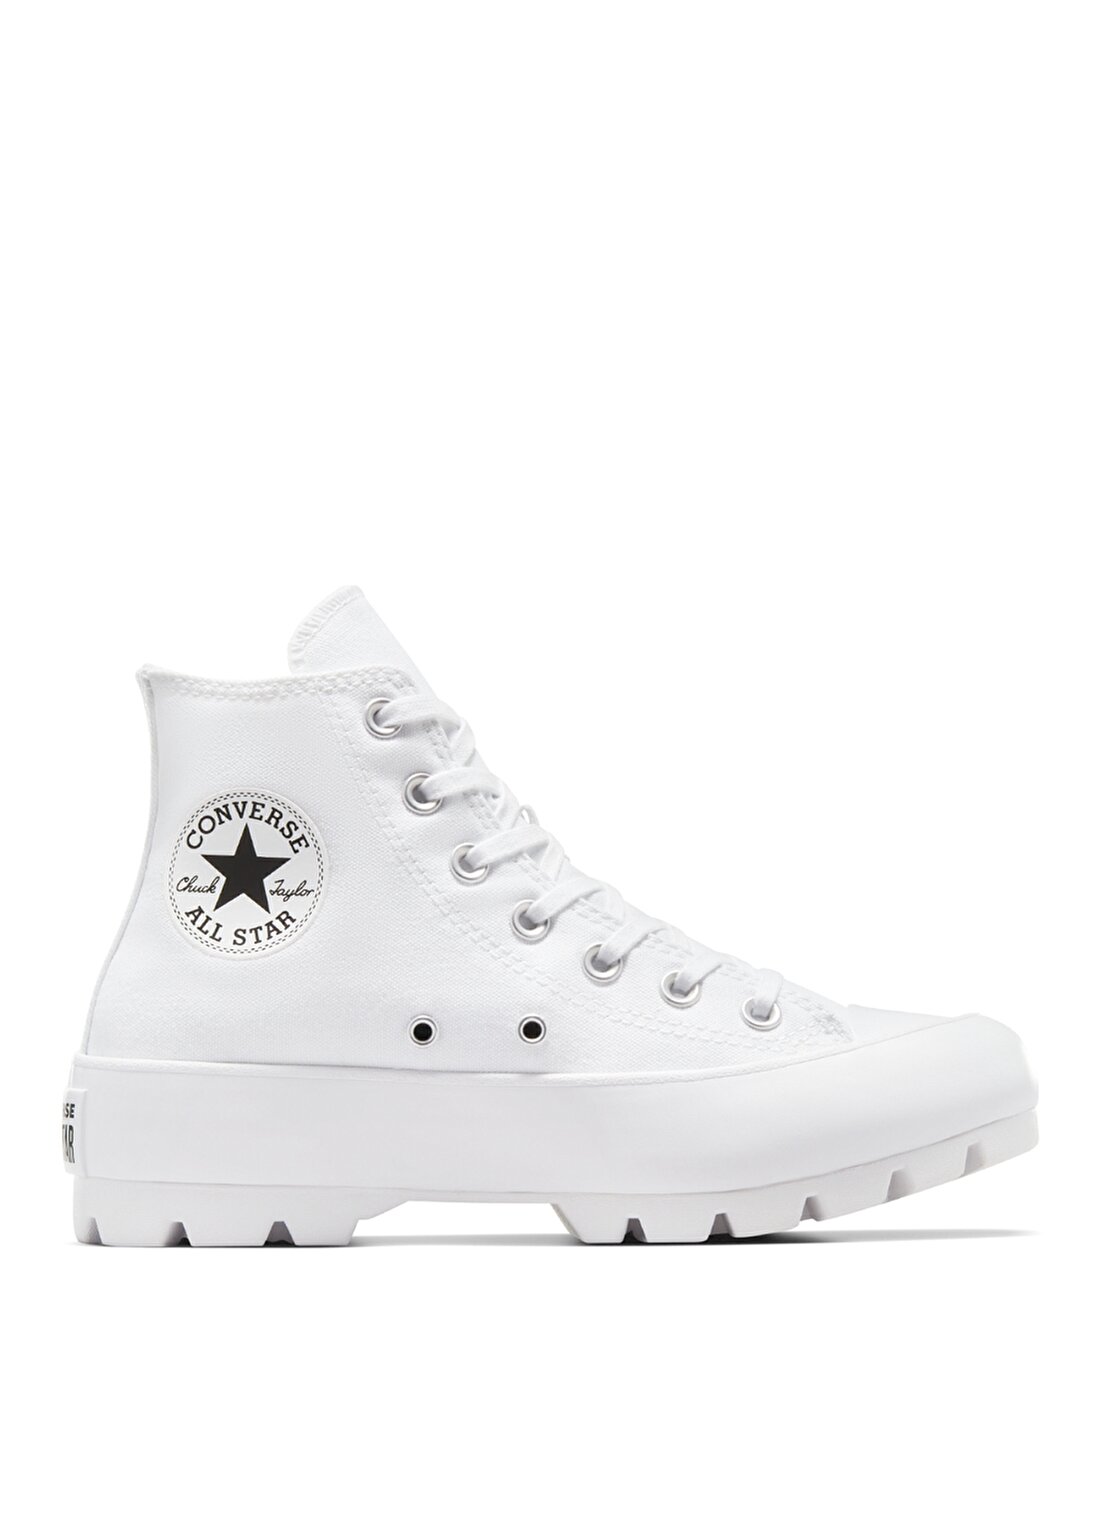 Converse Beyaz Kadın Lifestyle Ayakkabı 565902C CHUCK TAYLOR ALL STAR LU